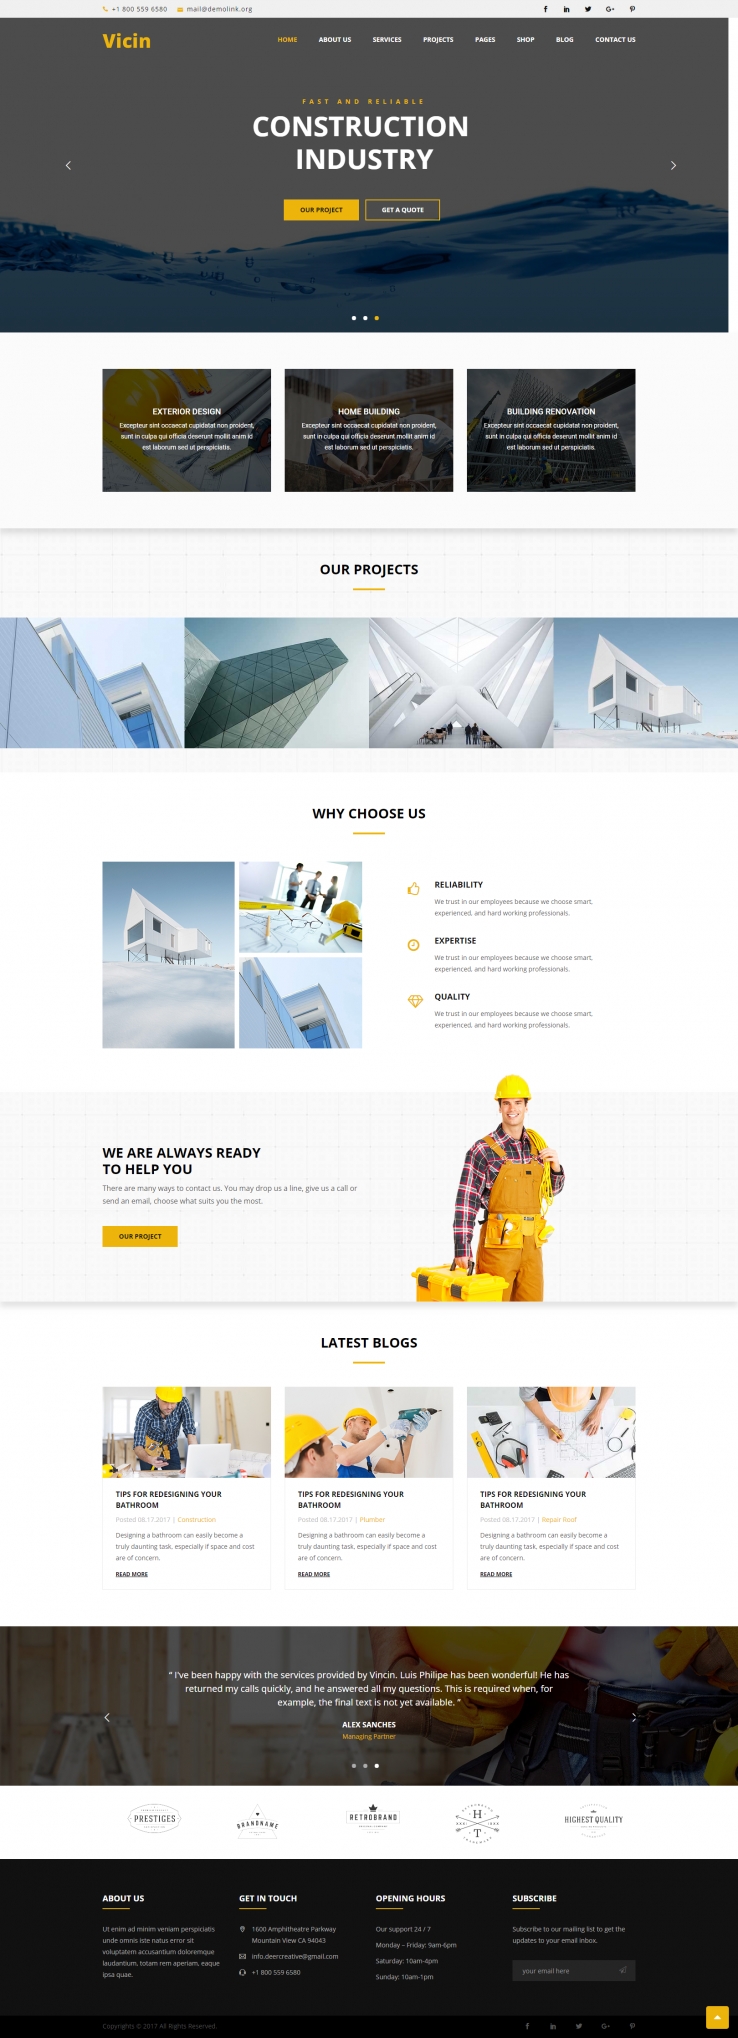 黄色简洁风格的建筑装修公司企业网站源码下载